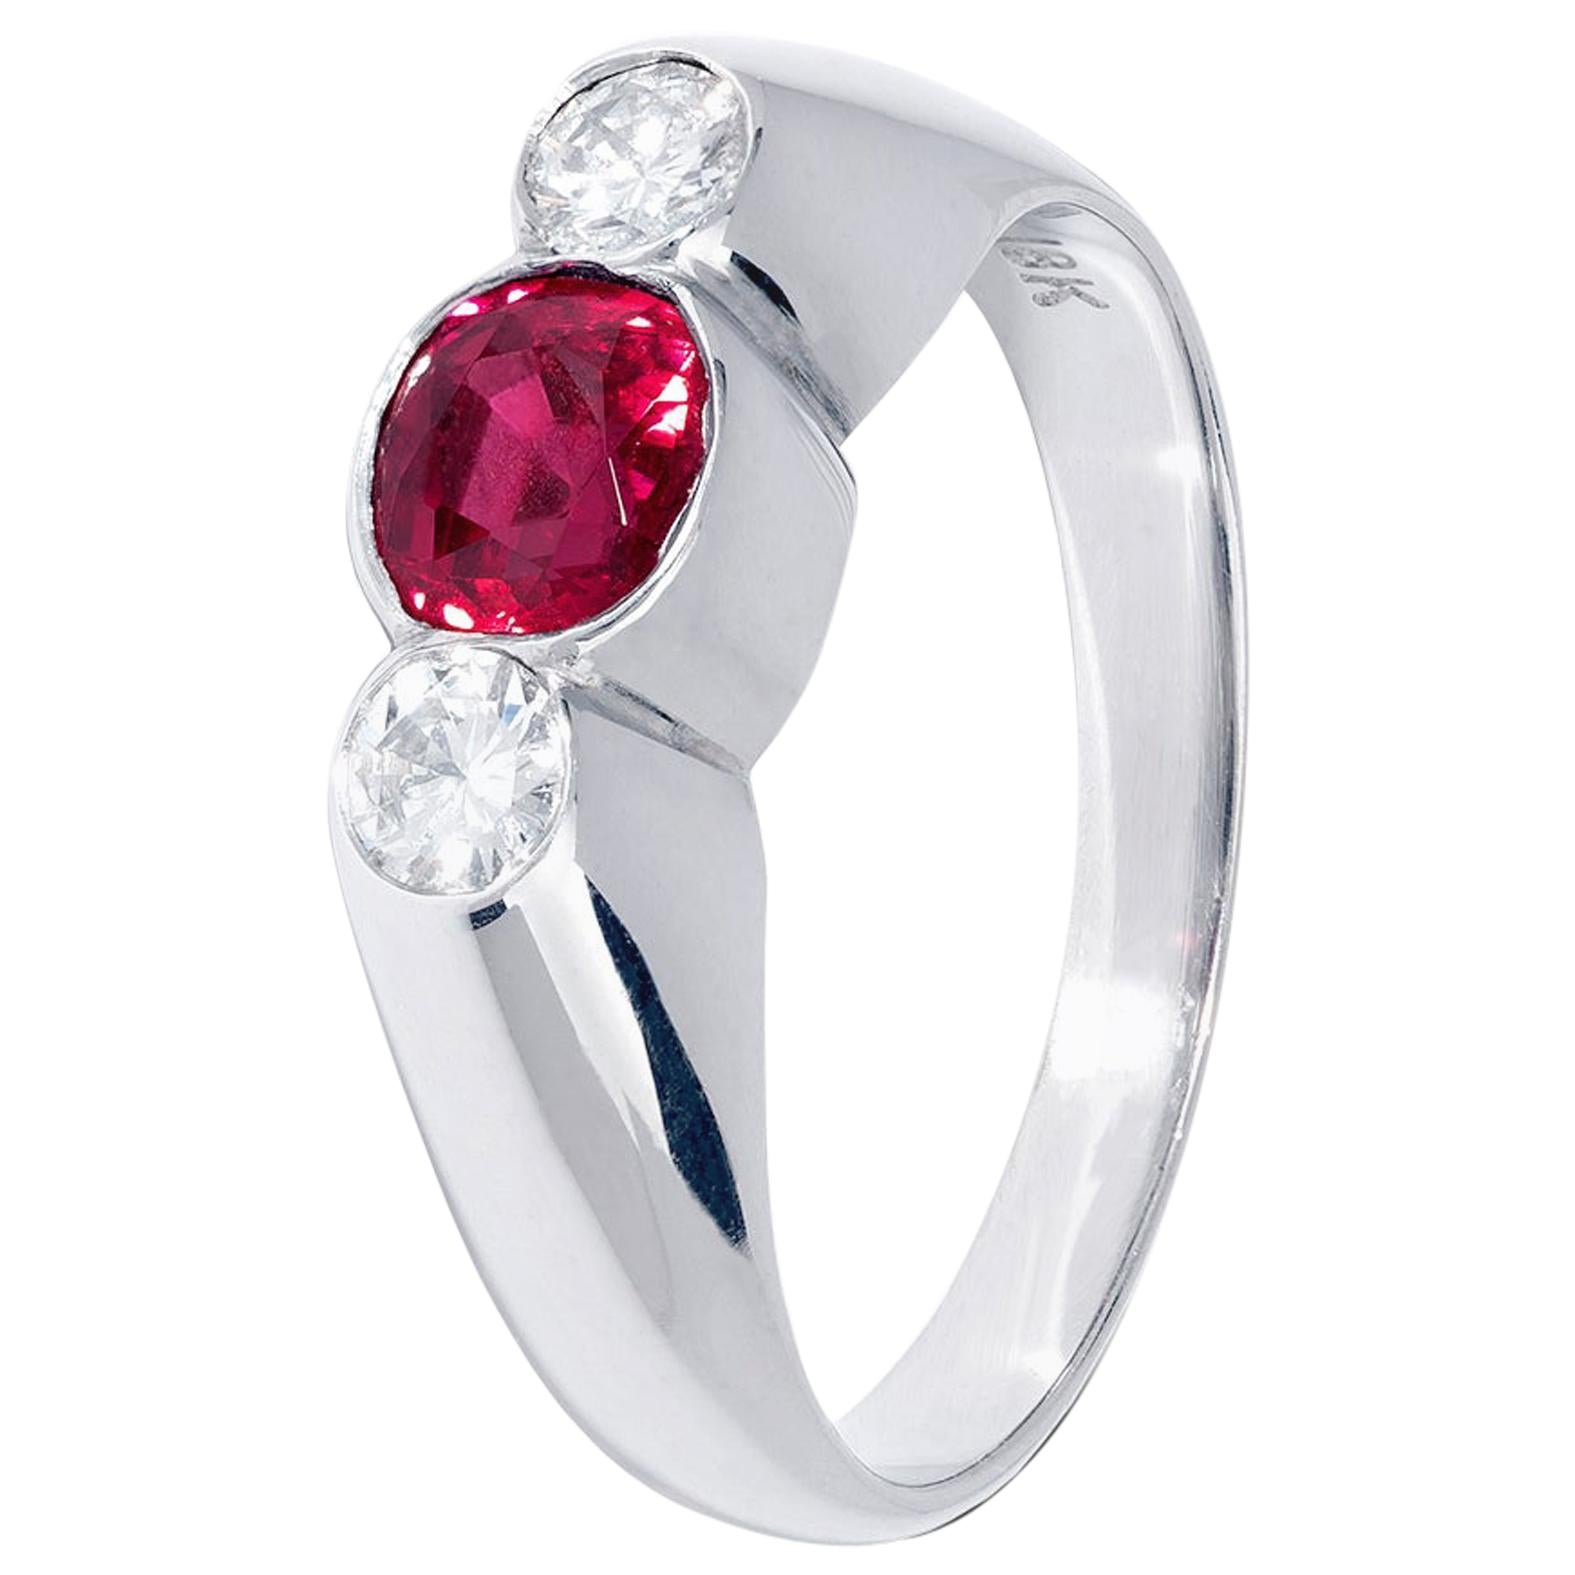 Außergewöhnlicher Dreistein-Ring mit Rubin und Diamant